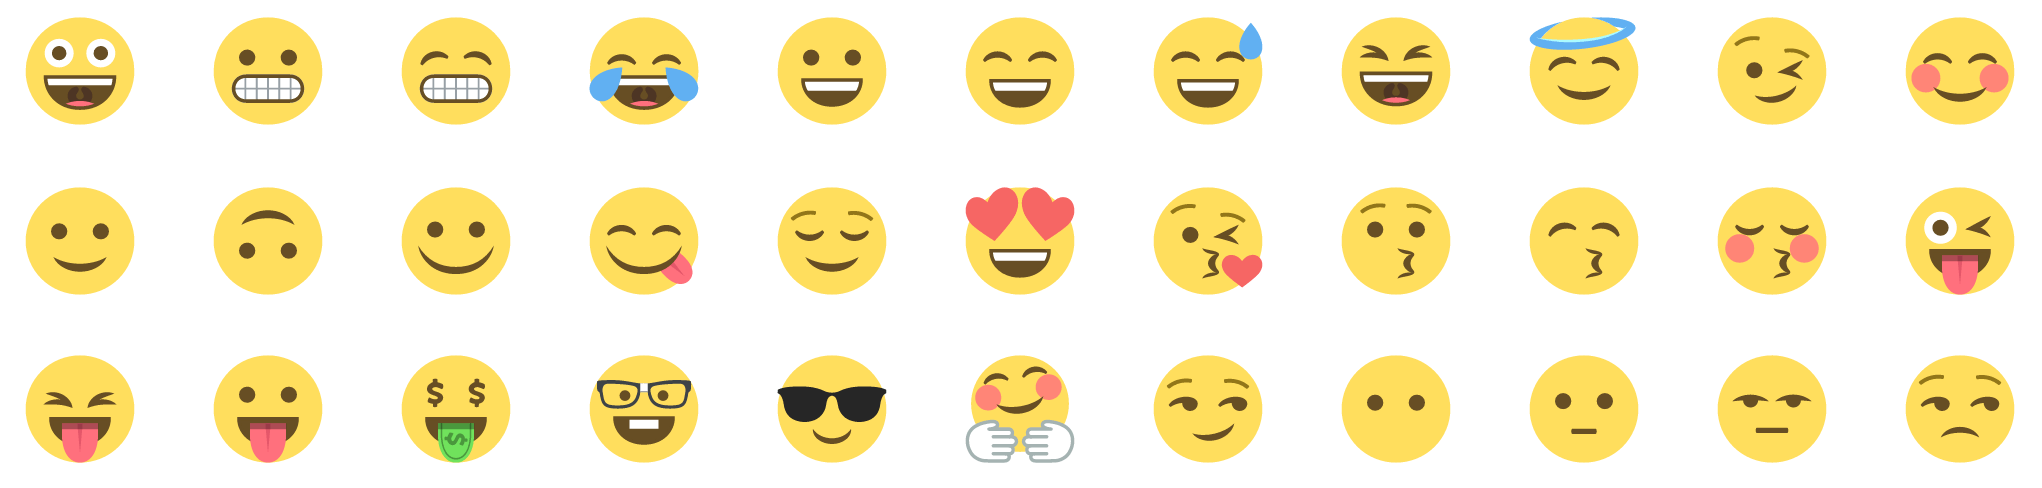 more emojis